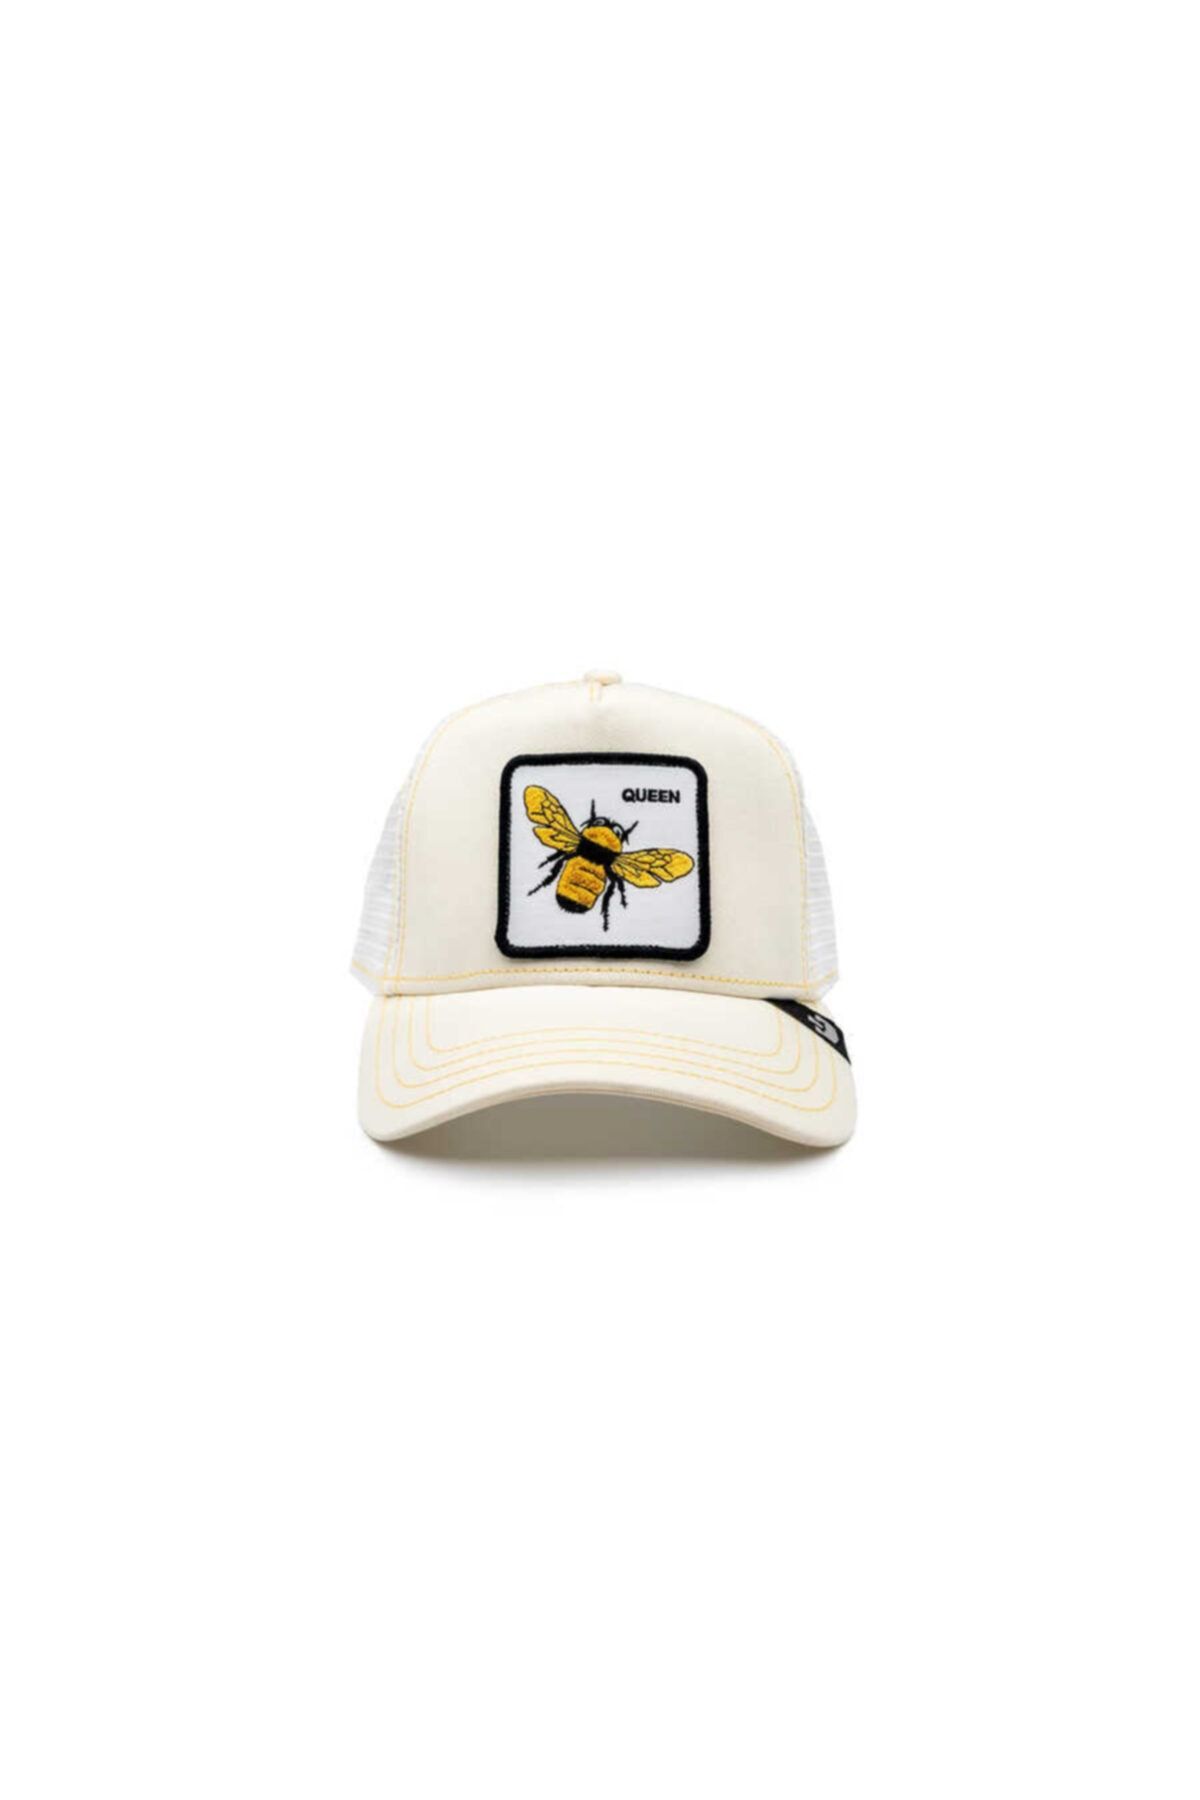 کلاه کپ طرح زنبور کرمی یونیسکس گورین براس Goorin Bros (برند آمریکا)